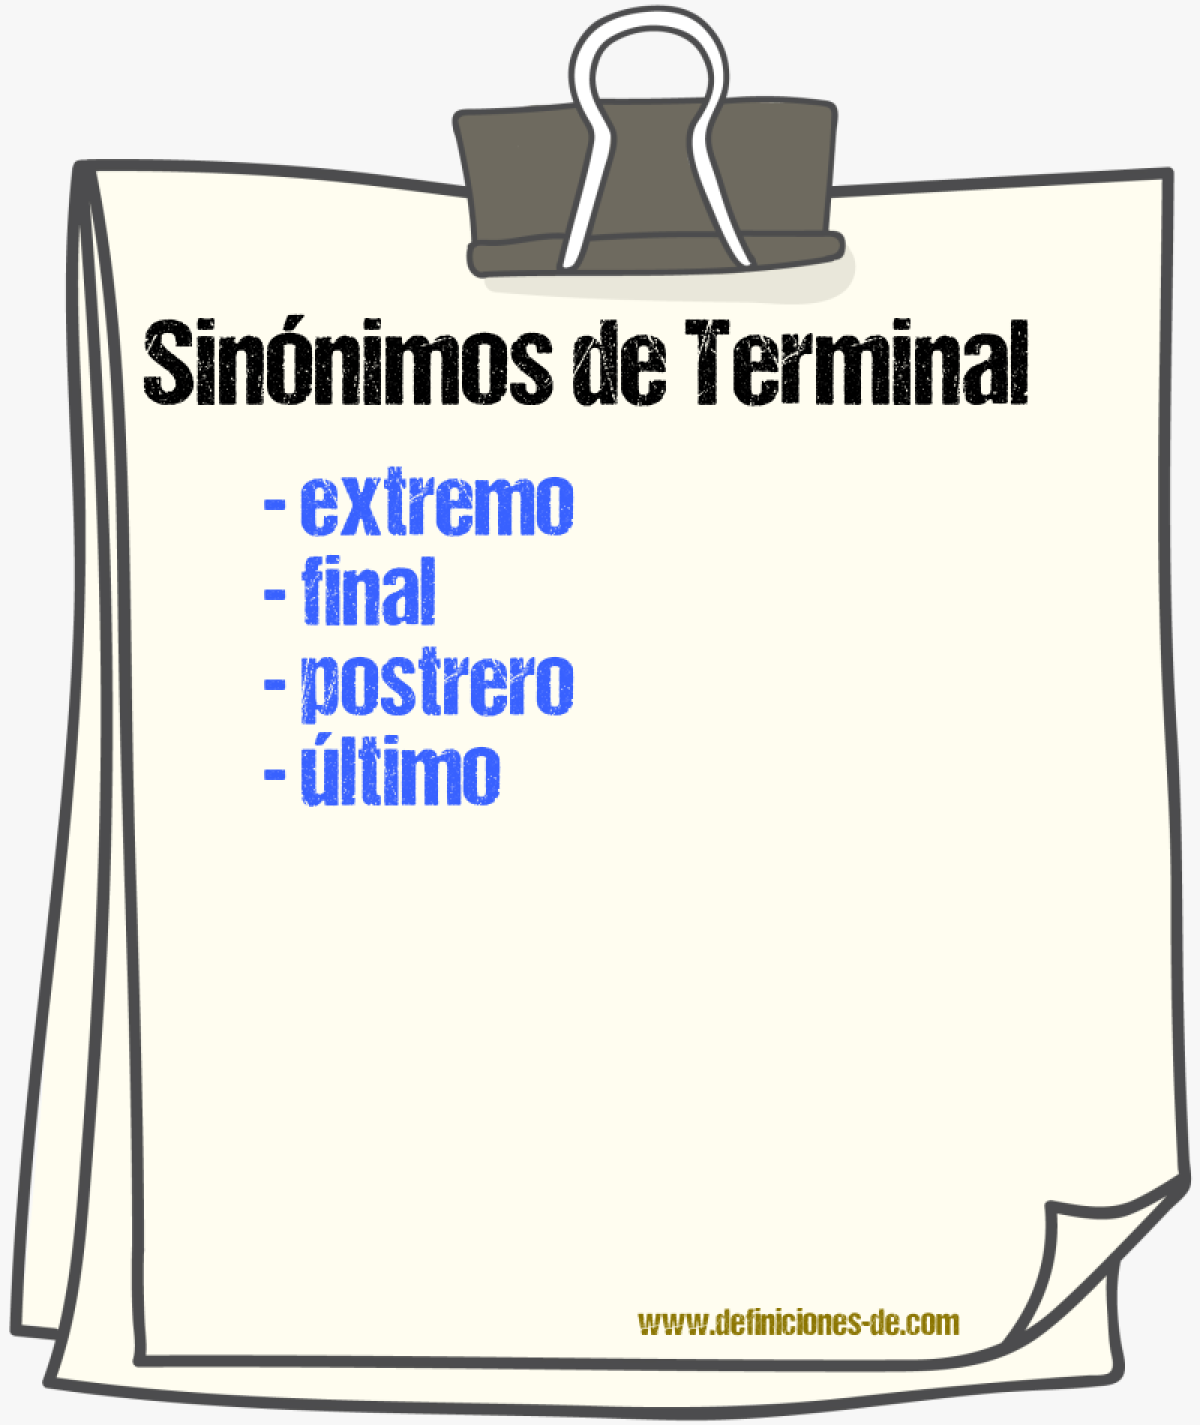 Sinónimos de terminal